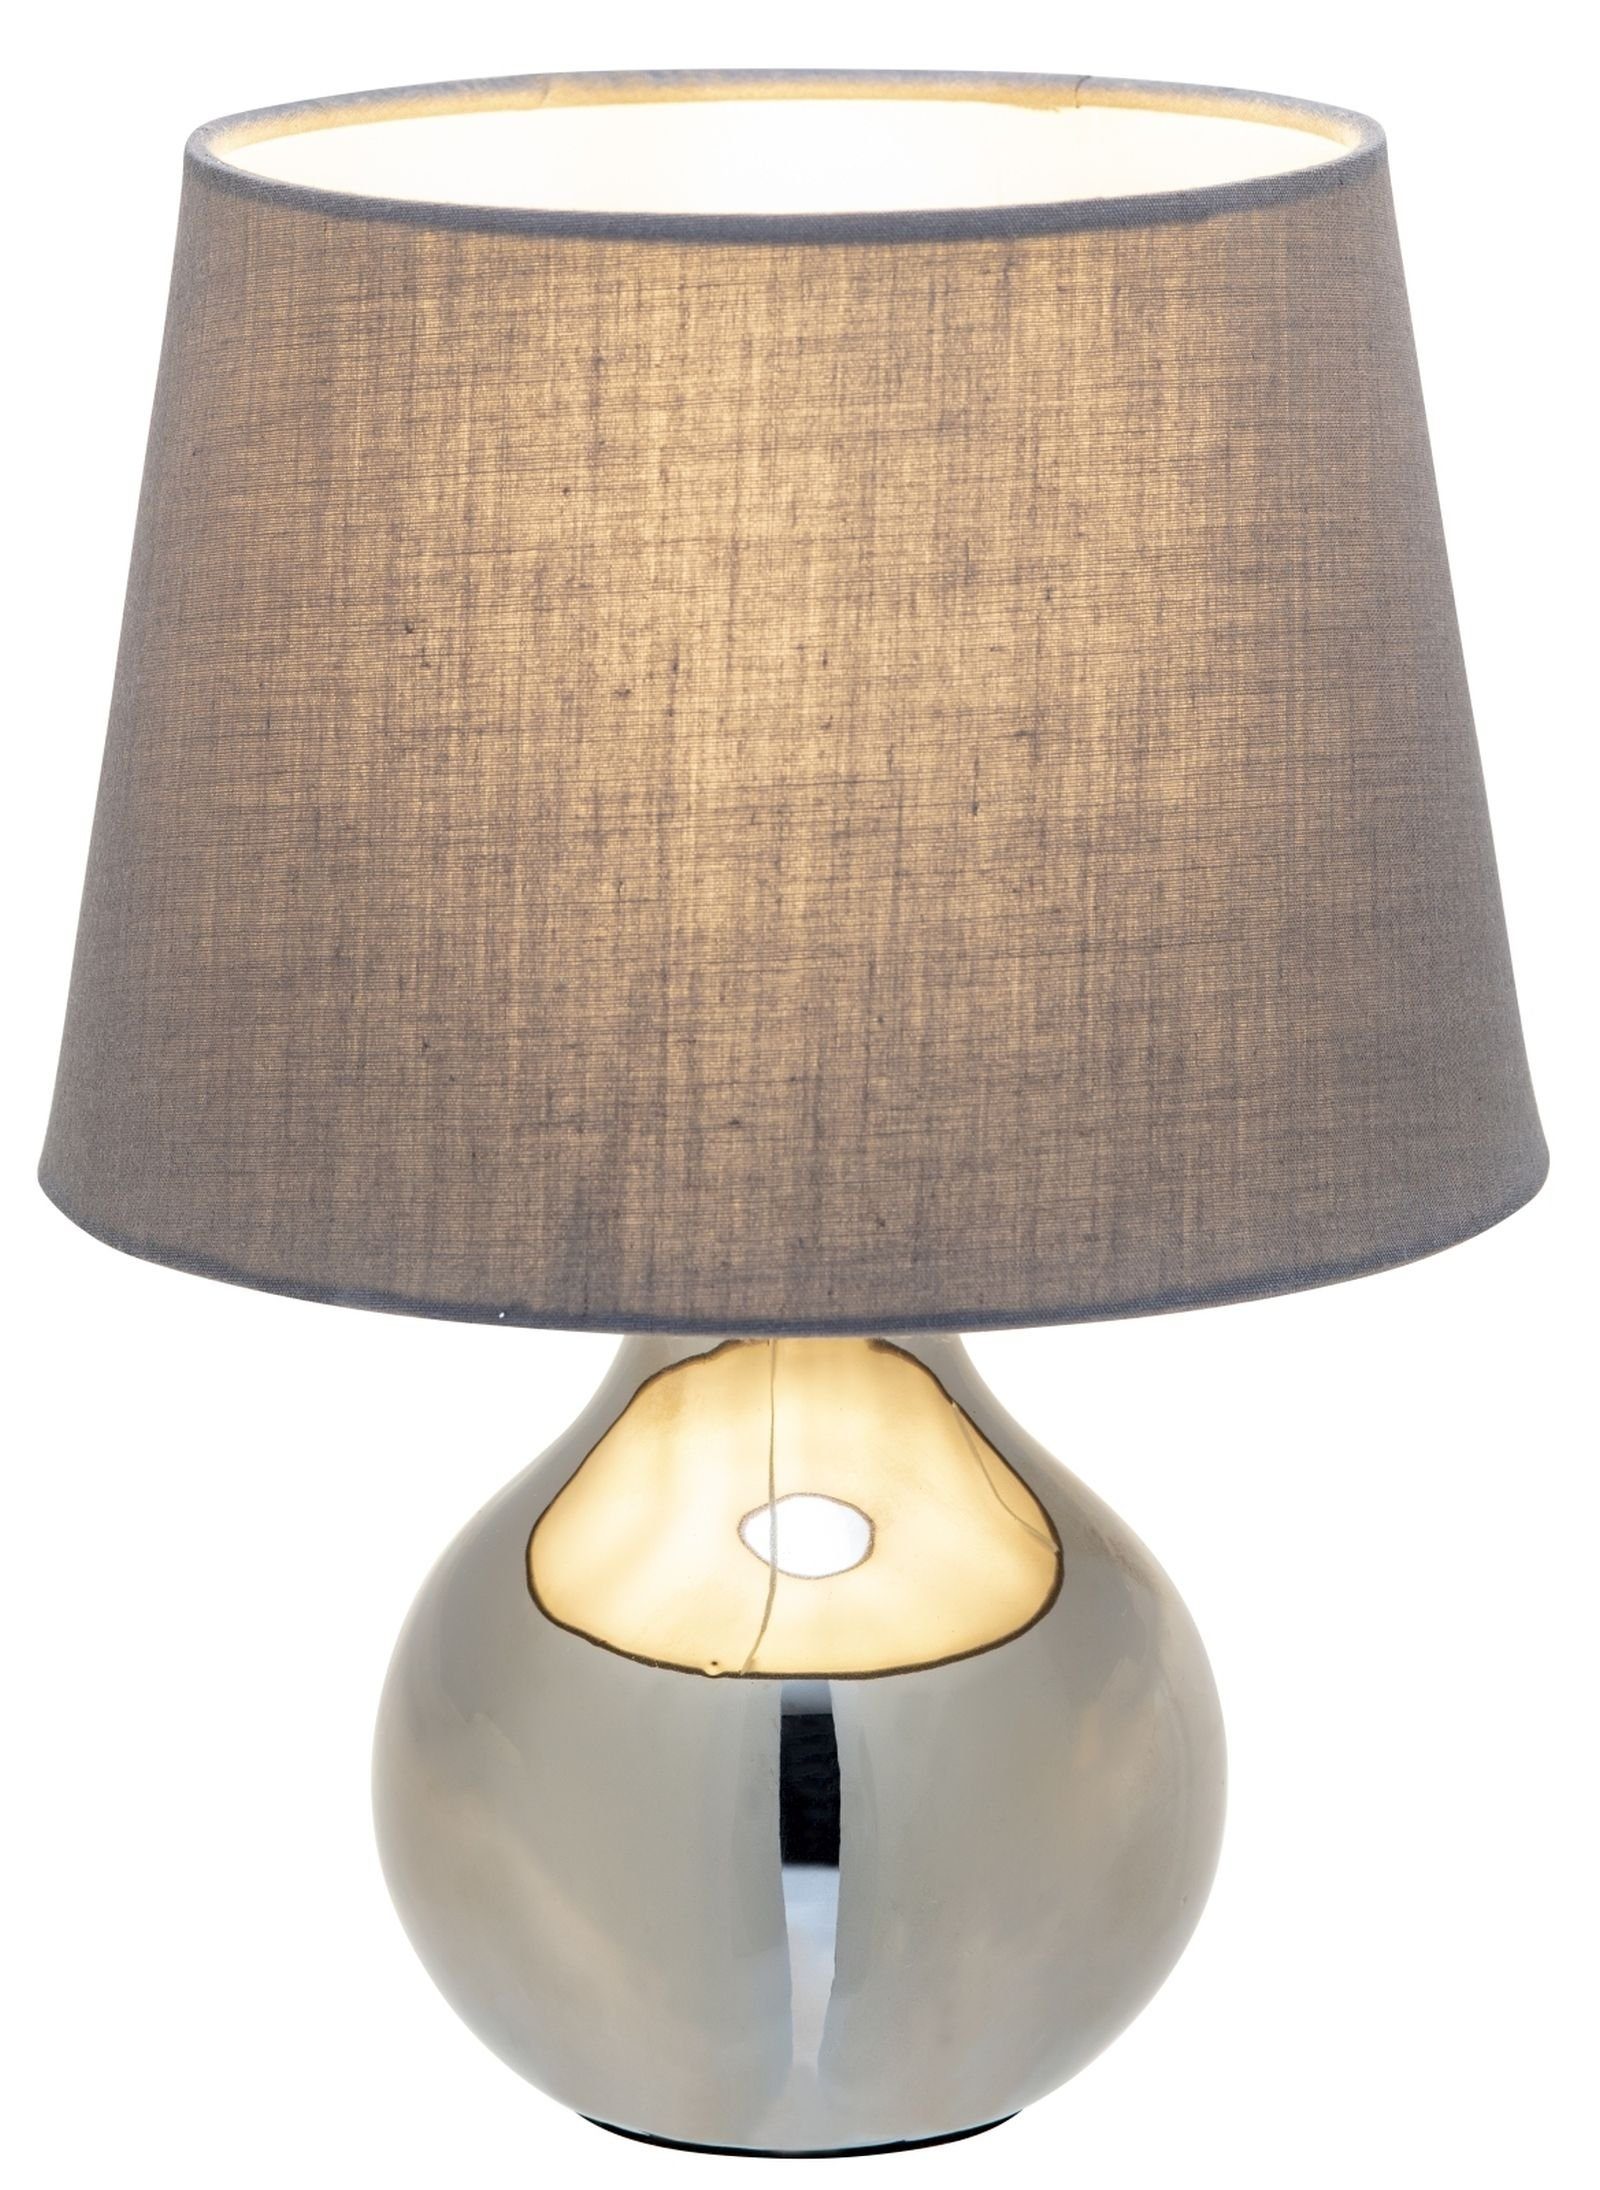 bmf-versand Tischleuchte Nino Leuchten Tischlampe Wohnzimmer Tischleuchte Schlafzimmer grau